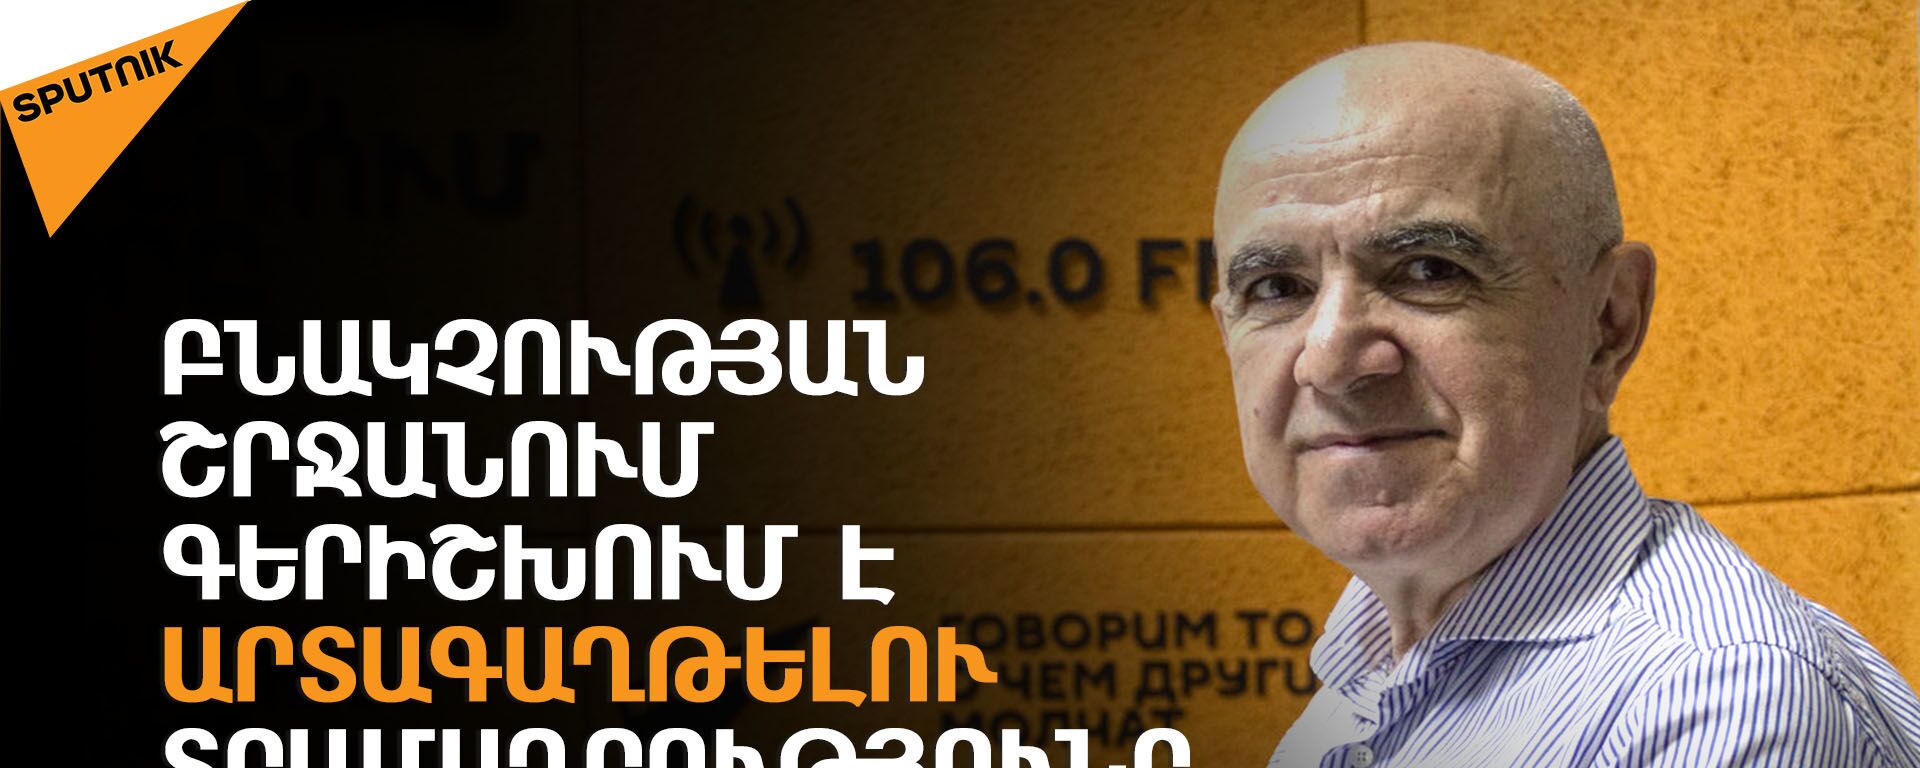 Անկախության 30 տարիների ընթացքում Հայաստանից արտագաղթել է 1.6-1.7 մլն մարդ. Գագիկ Եգանյան - Sputnik Արմենիա, 1920, 11.06.2021